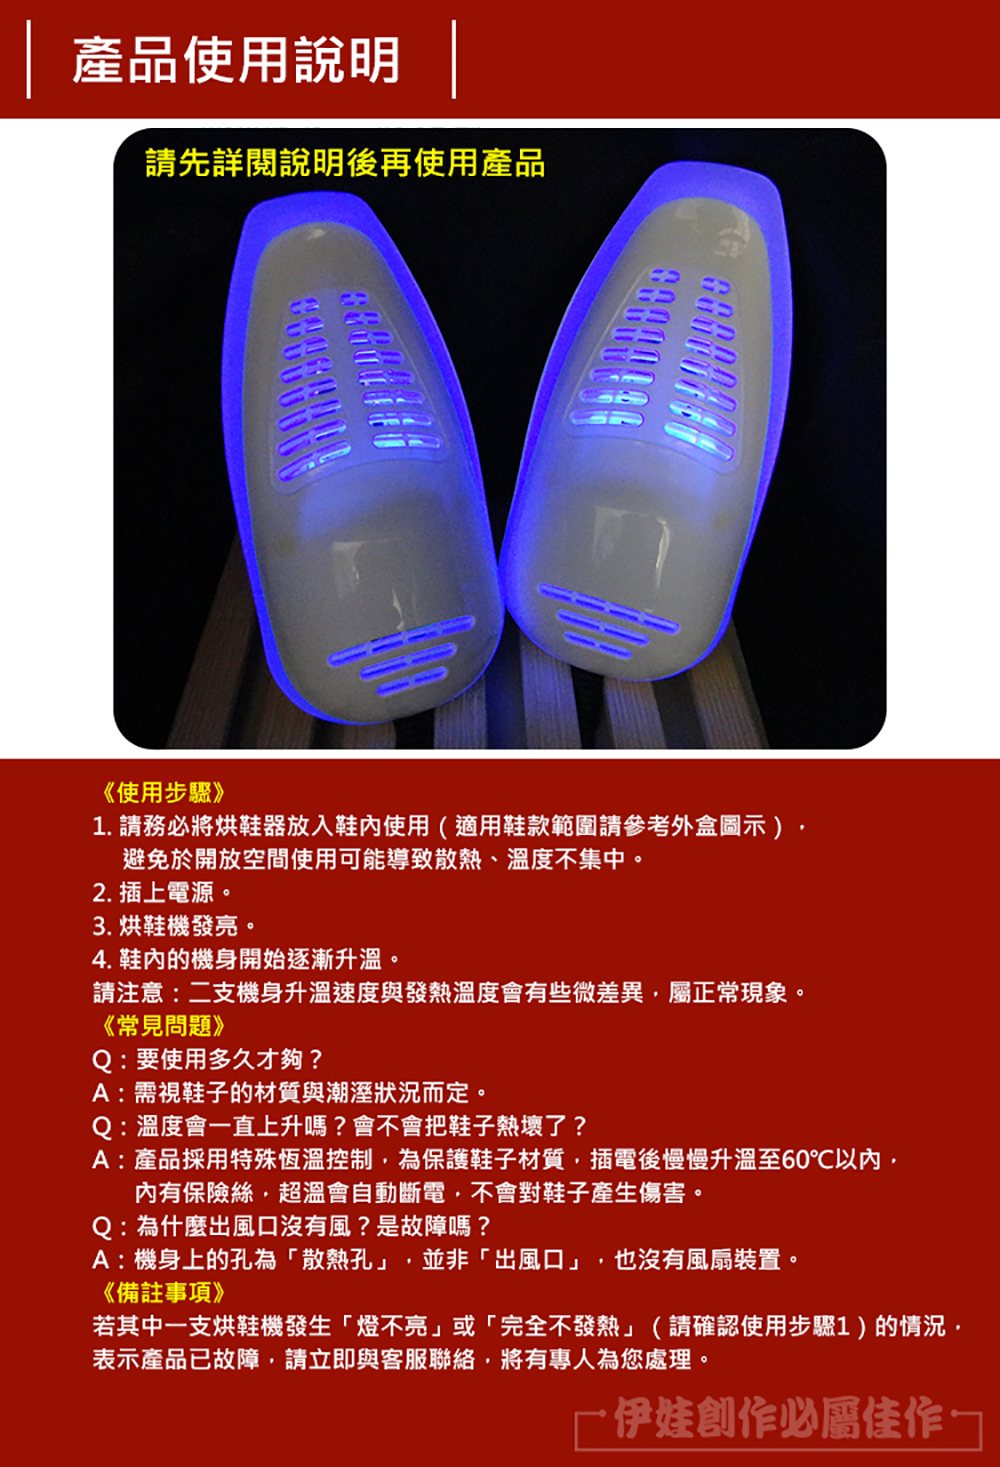 【伊德萊斯】紫外線烘鞋器(除濕/除臭/乾鞋機)